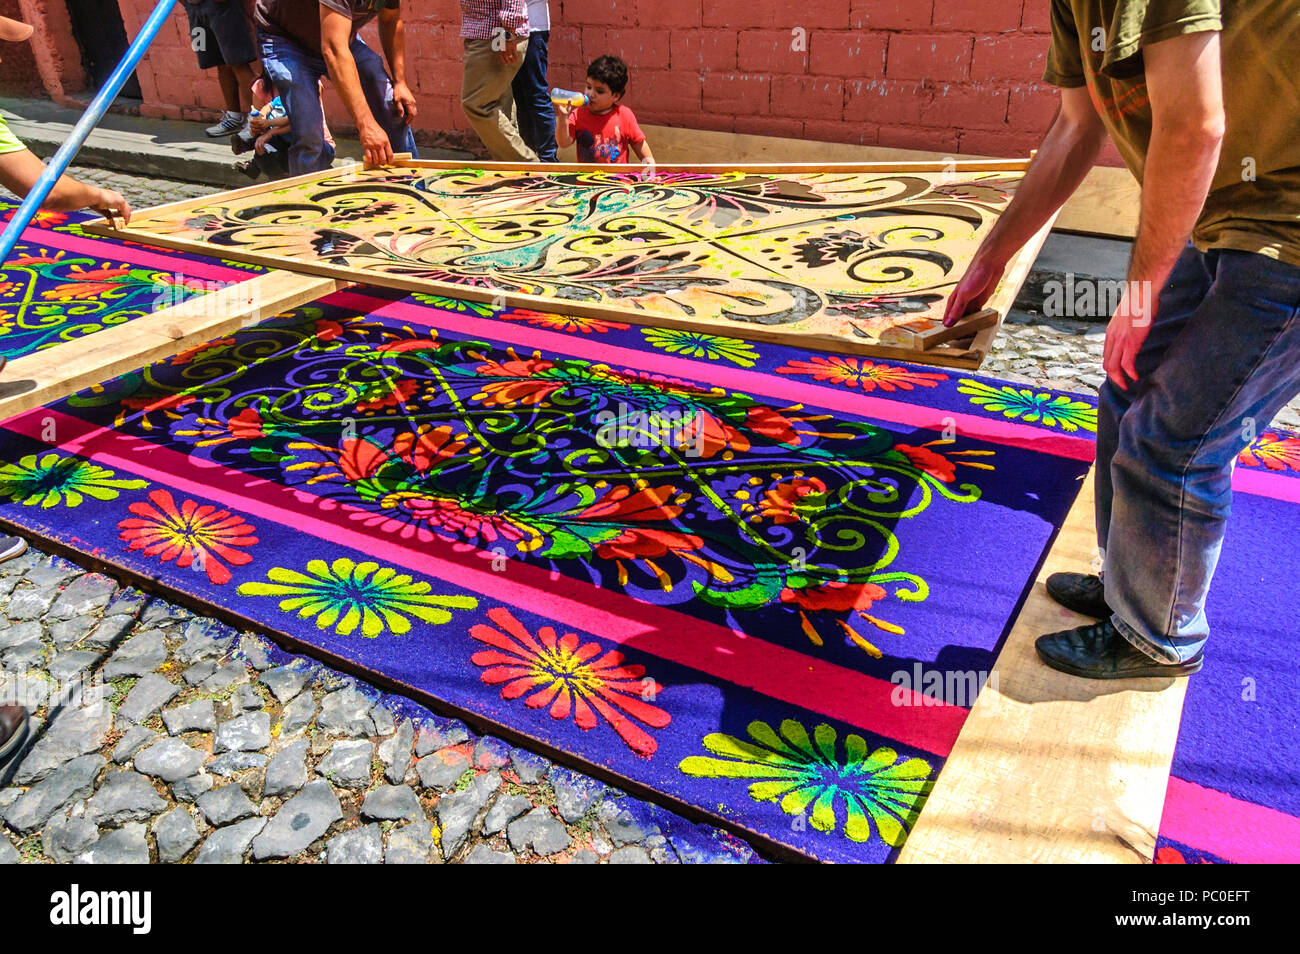 Antigua, Guatemala - April 2, 2015: Einheimische gefärbte Sägespäne Prozession Teppich in der Stadt machen, mit dem berühmtesten Feierlichkeiten zur Karwoche in Lateinamerika. Stockfoto